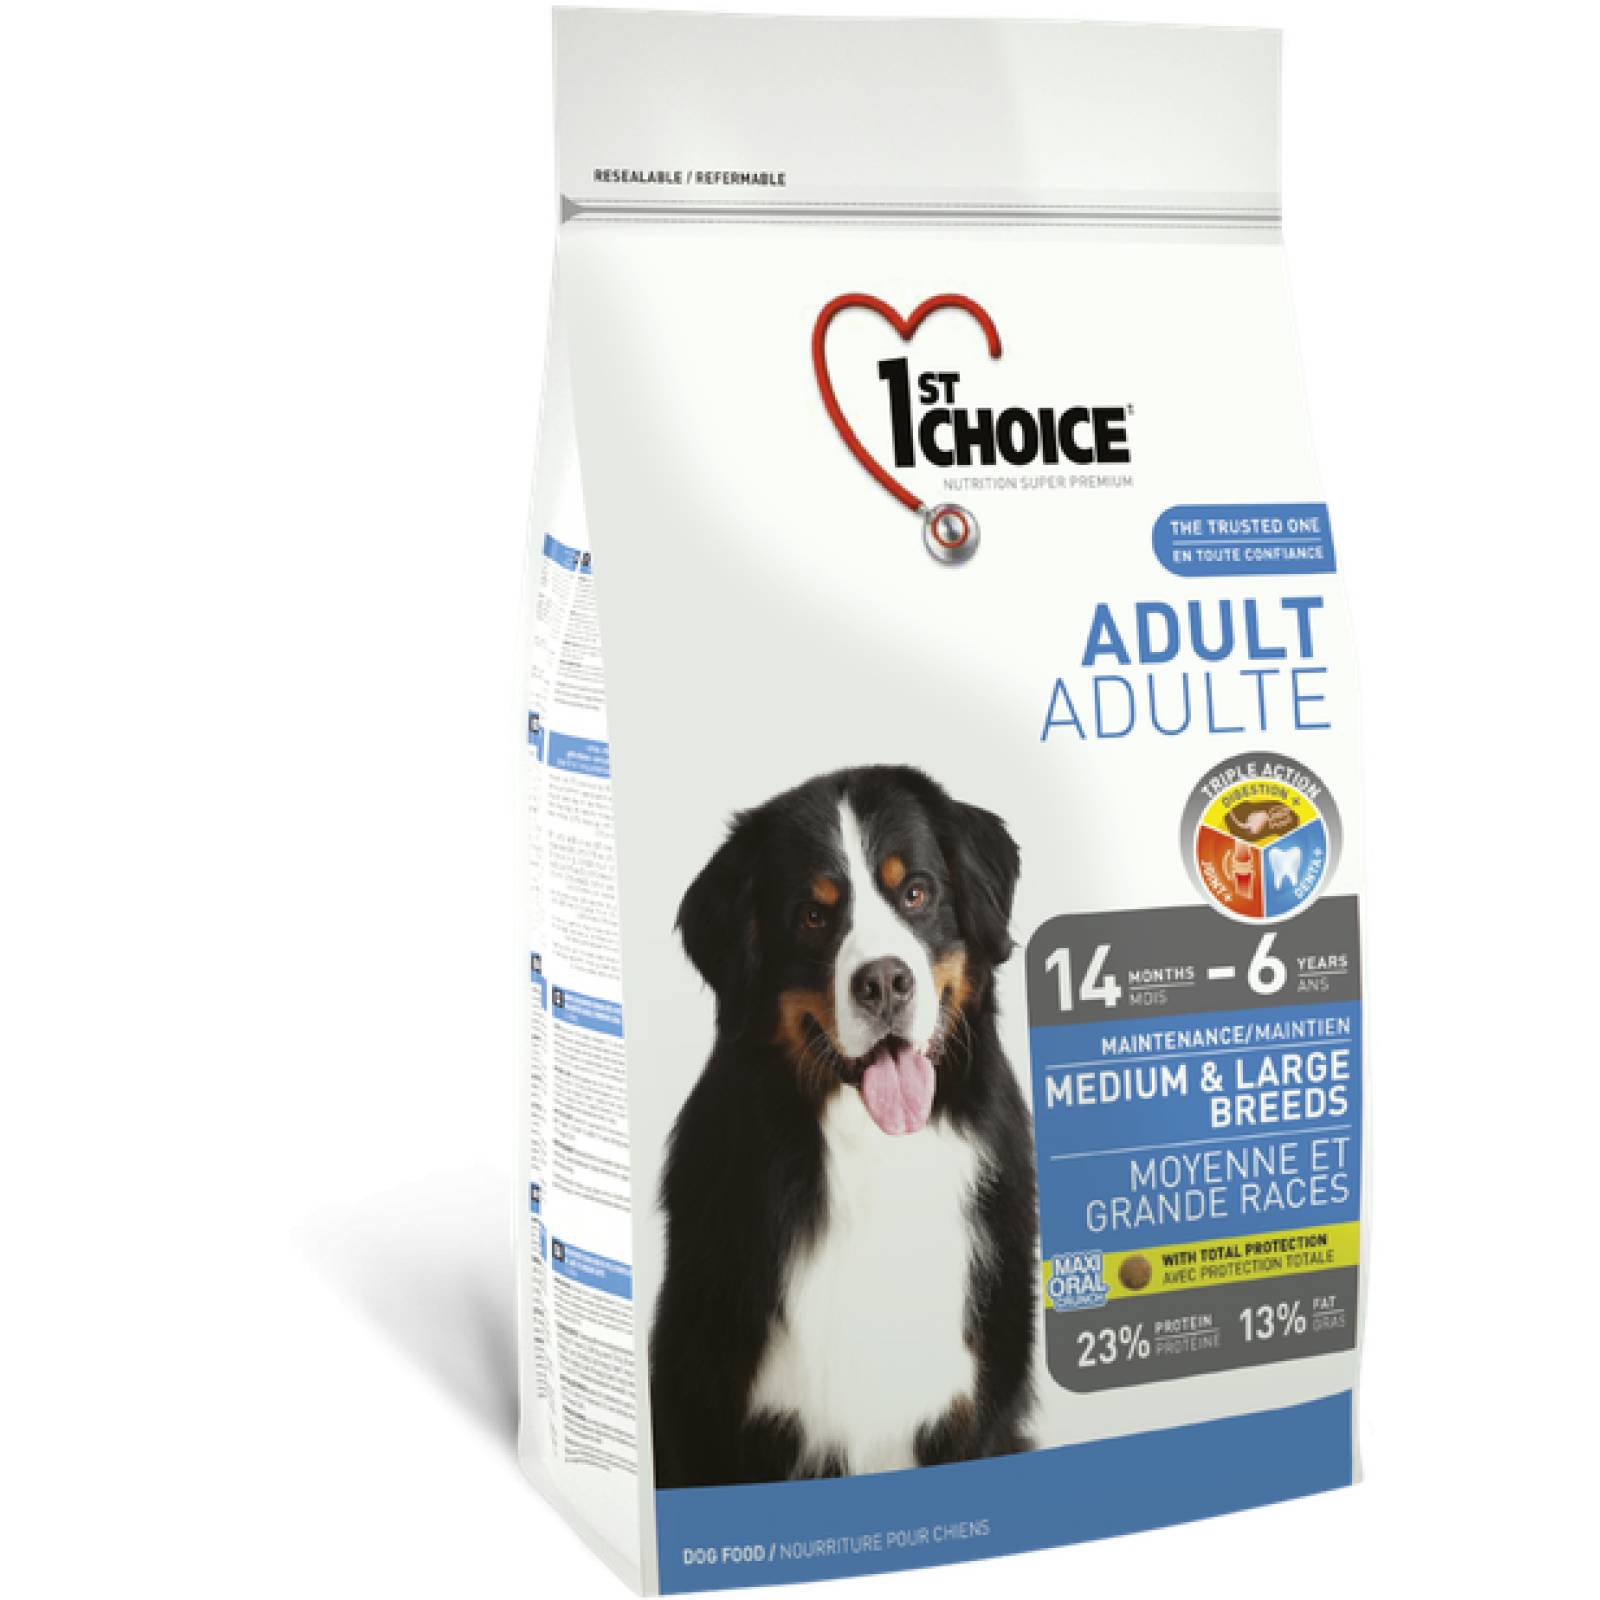 1ST Choice Alimento para Perro Adulto Raza Mediana y Grande Fórmula de pollo Edad: 14 meses  a 6 años 7 kg